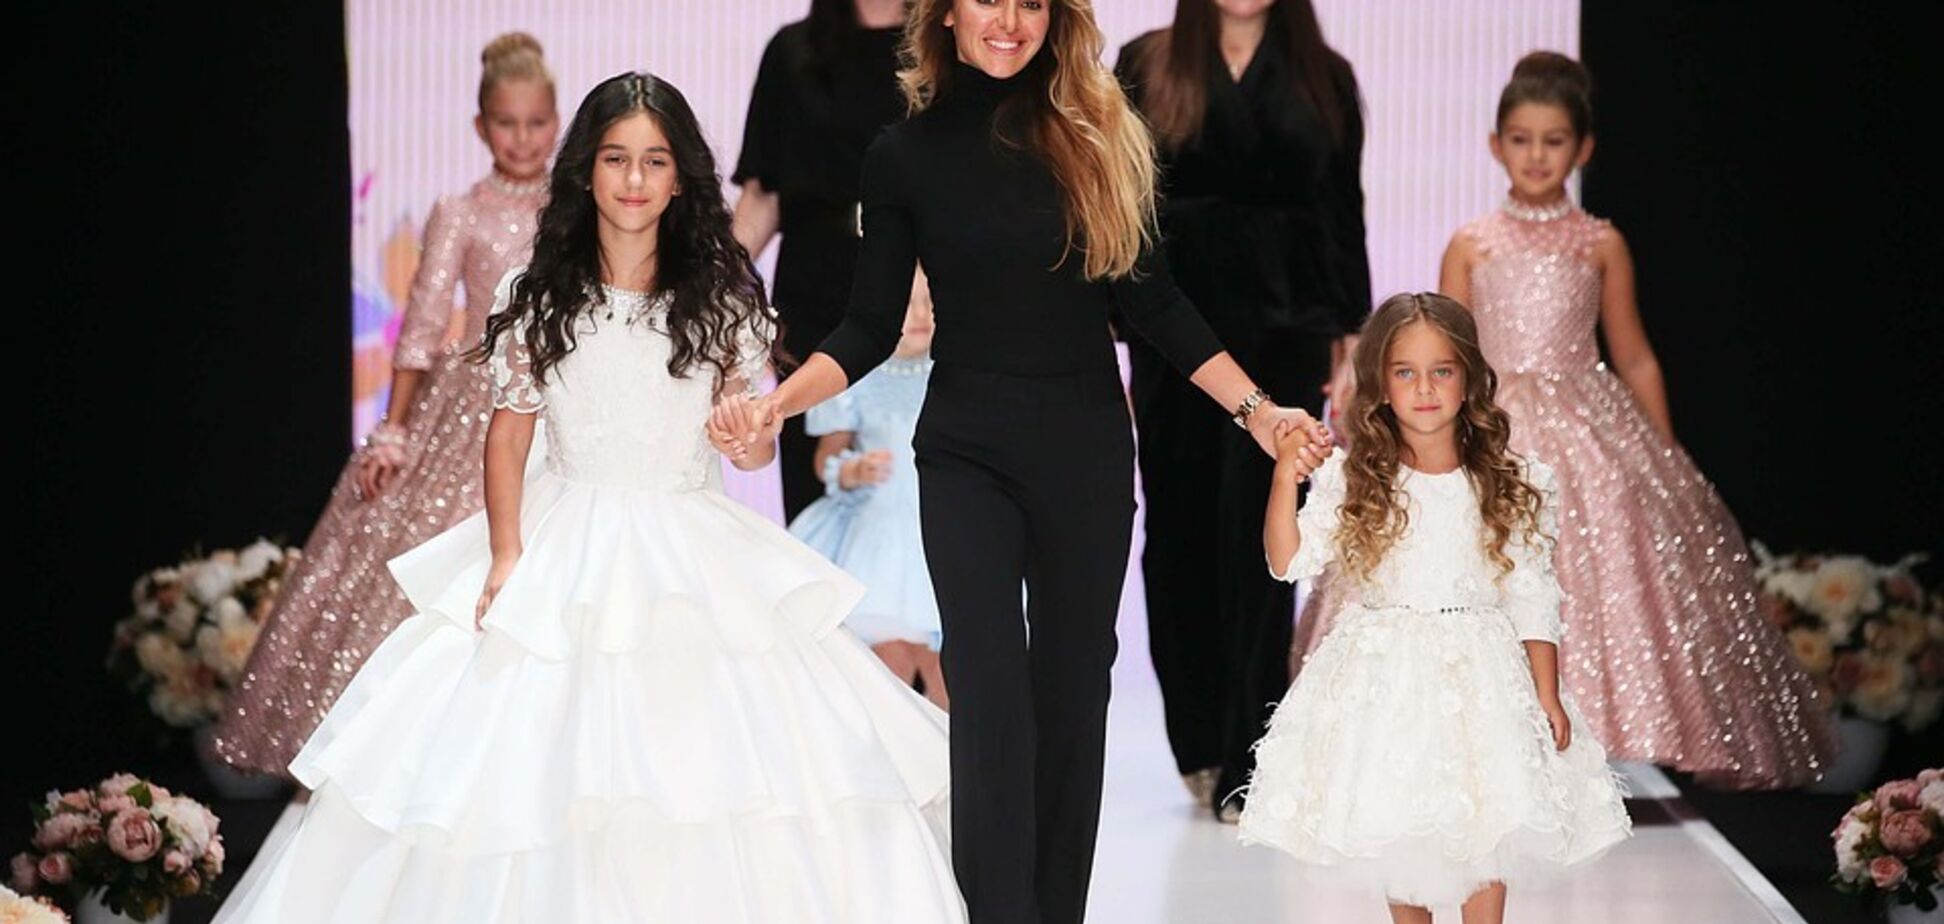 Неделя моды в Москве: дочери Ани Лорак и Киркорова стали моделями